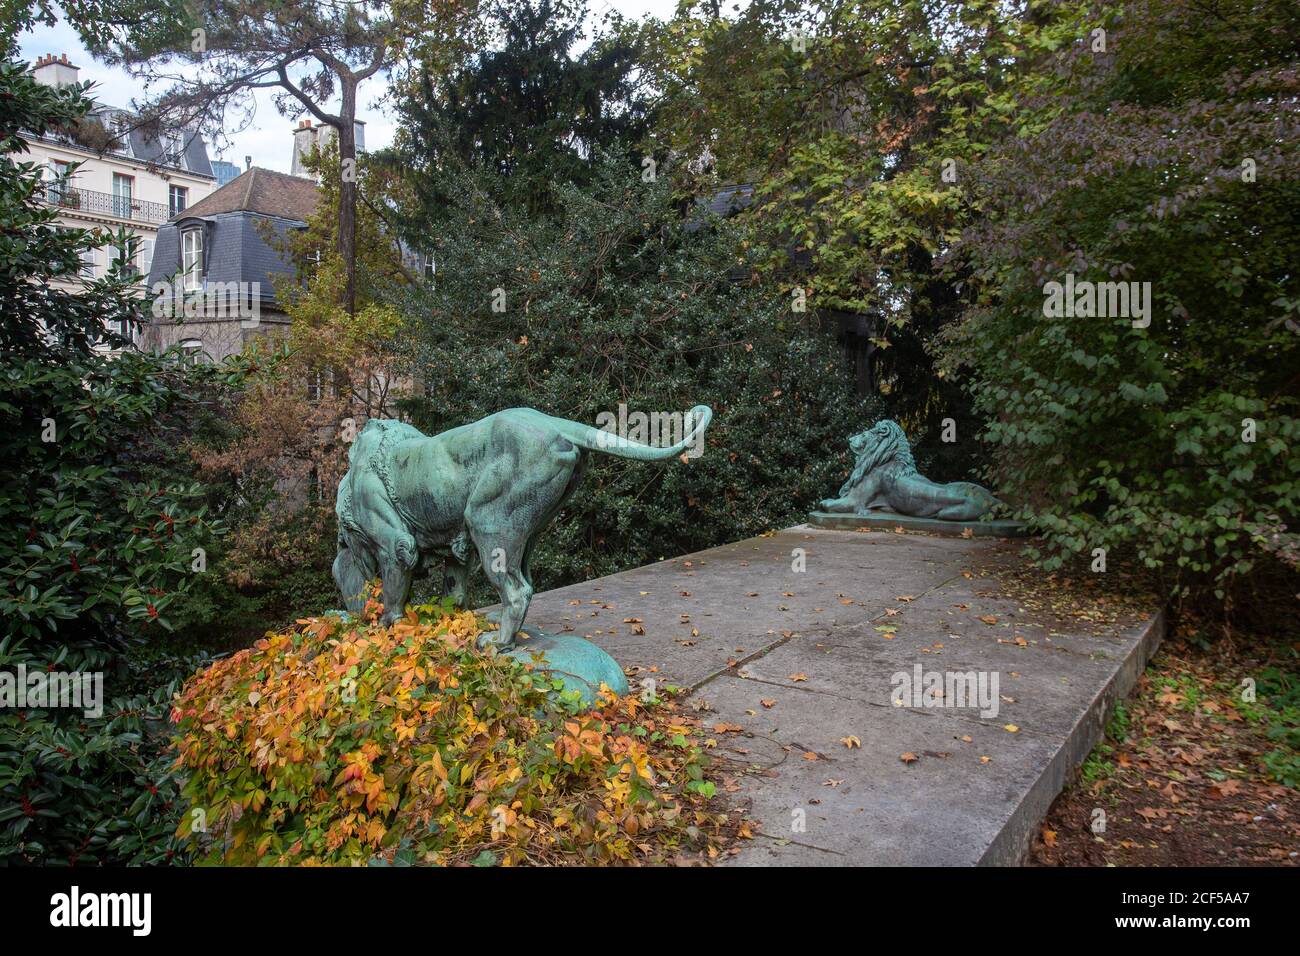 Sculptures de lions dans le jardin des plantes de Paris. Feuilles d'automne jaune et orange sur terre Banque D'Images